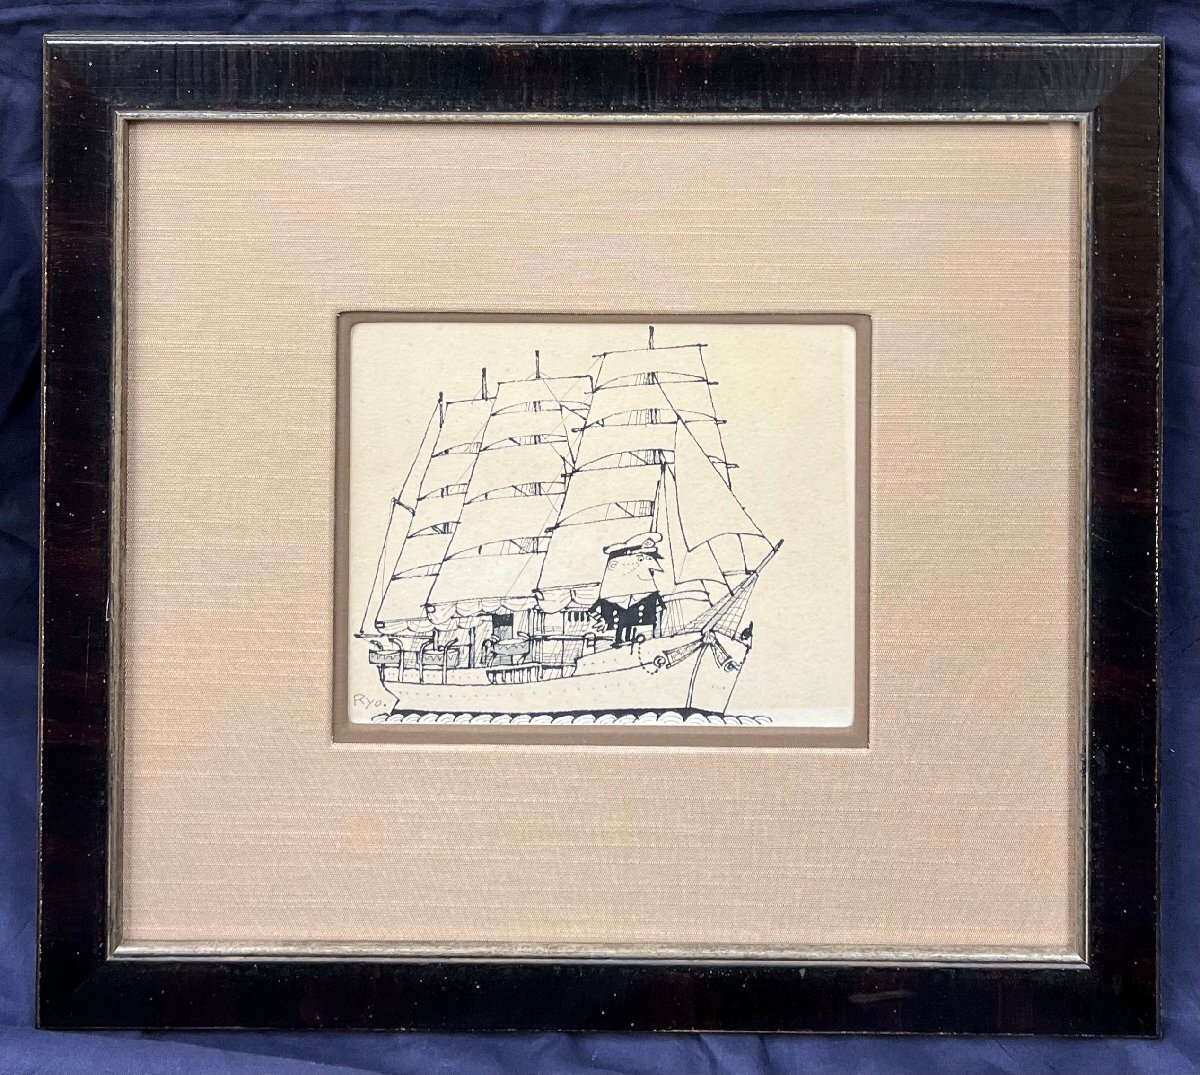 Ryohei Yanagihara Nippon Maru Federzeichnung, Größe 0-1, 1976, gerahmt, garantiert authentisch [Sehr wertvolle Handzeichnung, bekannt für seine Torys-Werbedesigns und Schiffszeichnungen, verbrachte seine Zeit in Yokohama], Kunstwerk, Malerei, Porträts